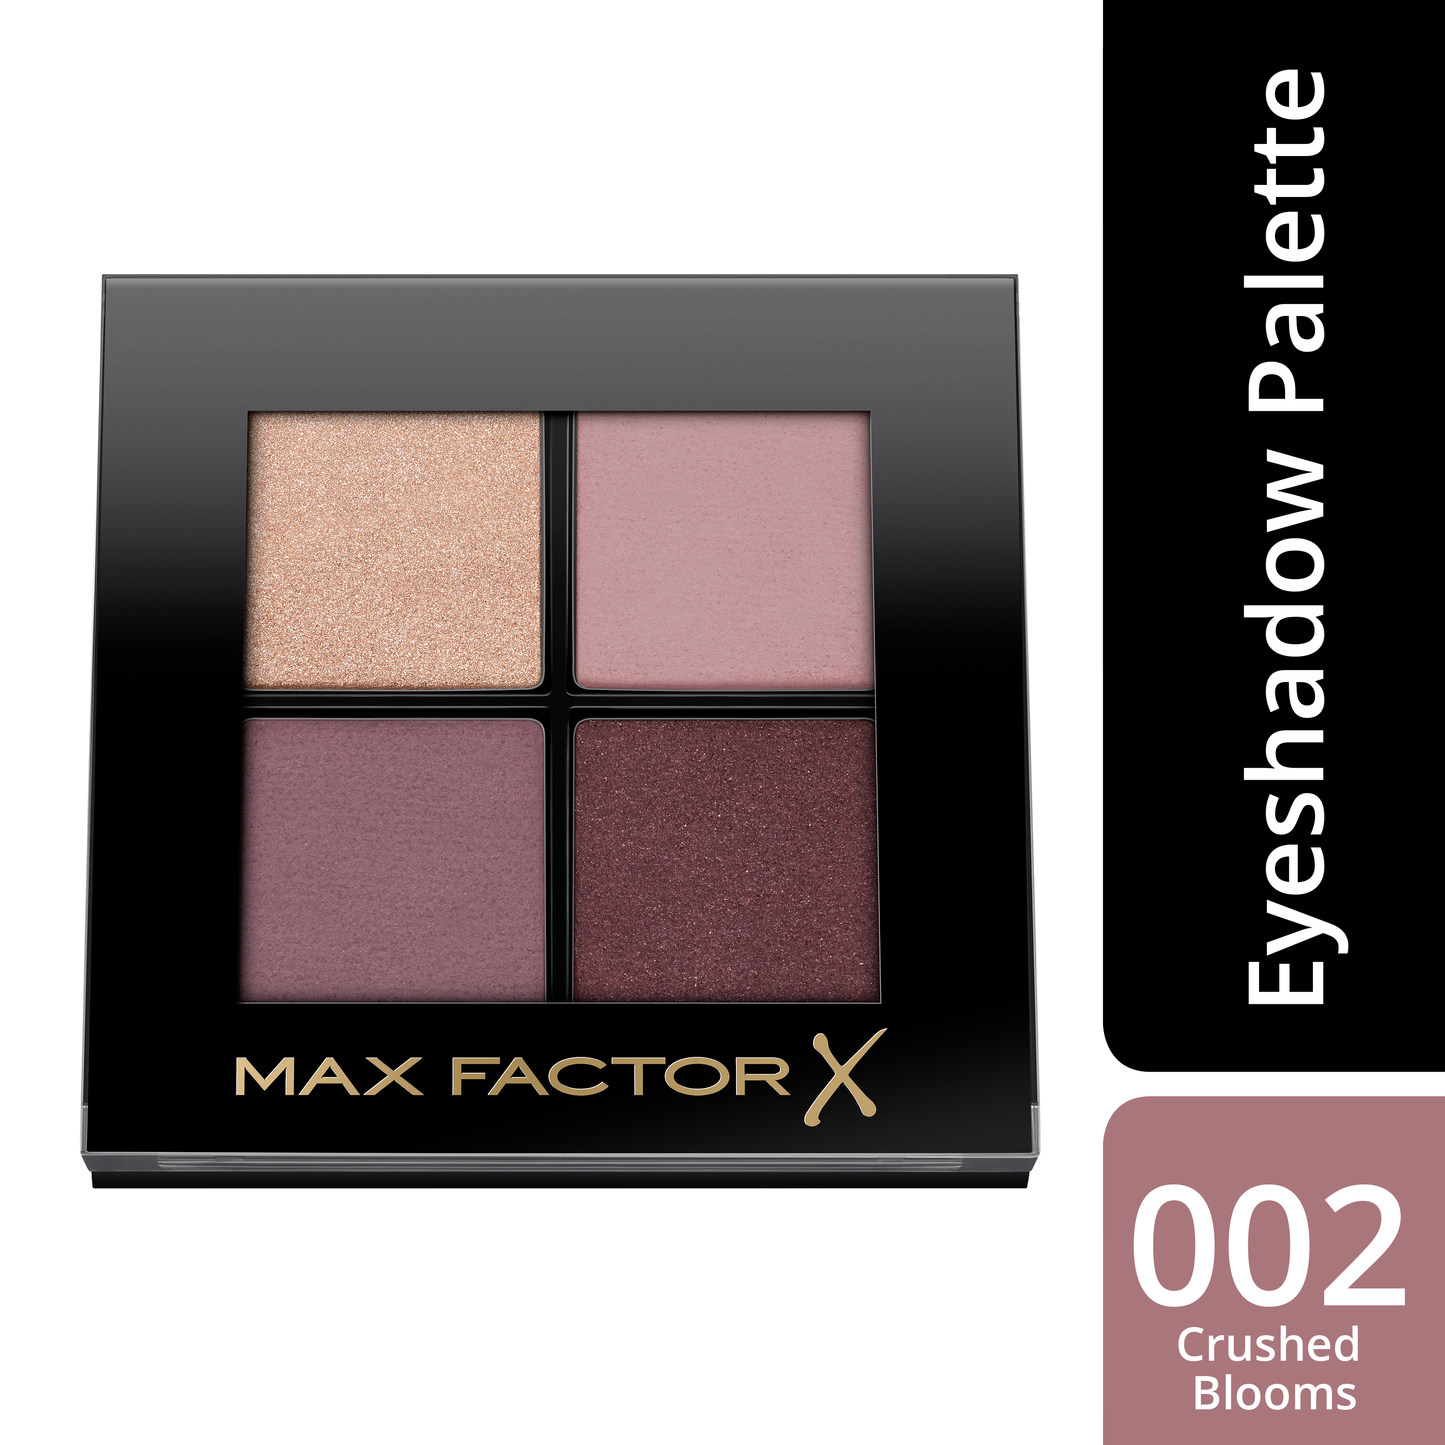 Max Factor Colour X-Pert Soft Touch Palette Ombretti, 4 Ombretti dal Colore Intenso, Altamente Sfumabili, 002 Crushed Blooms